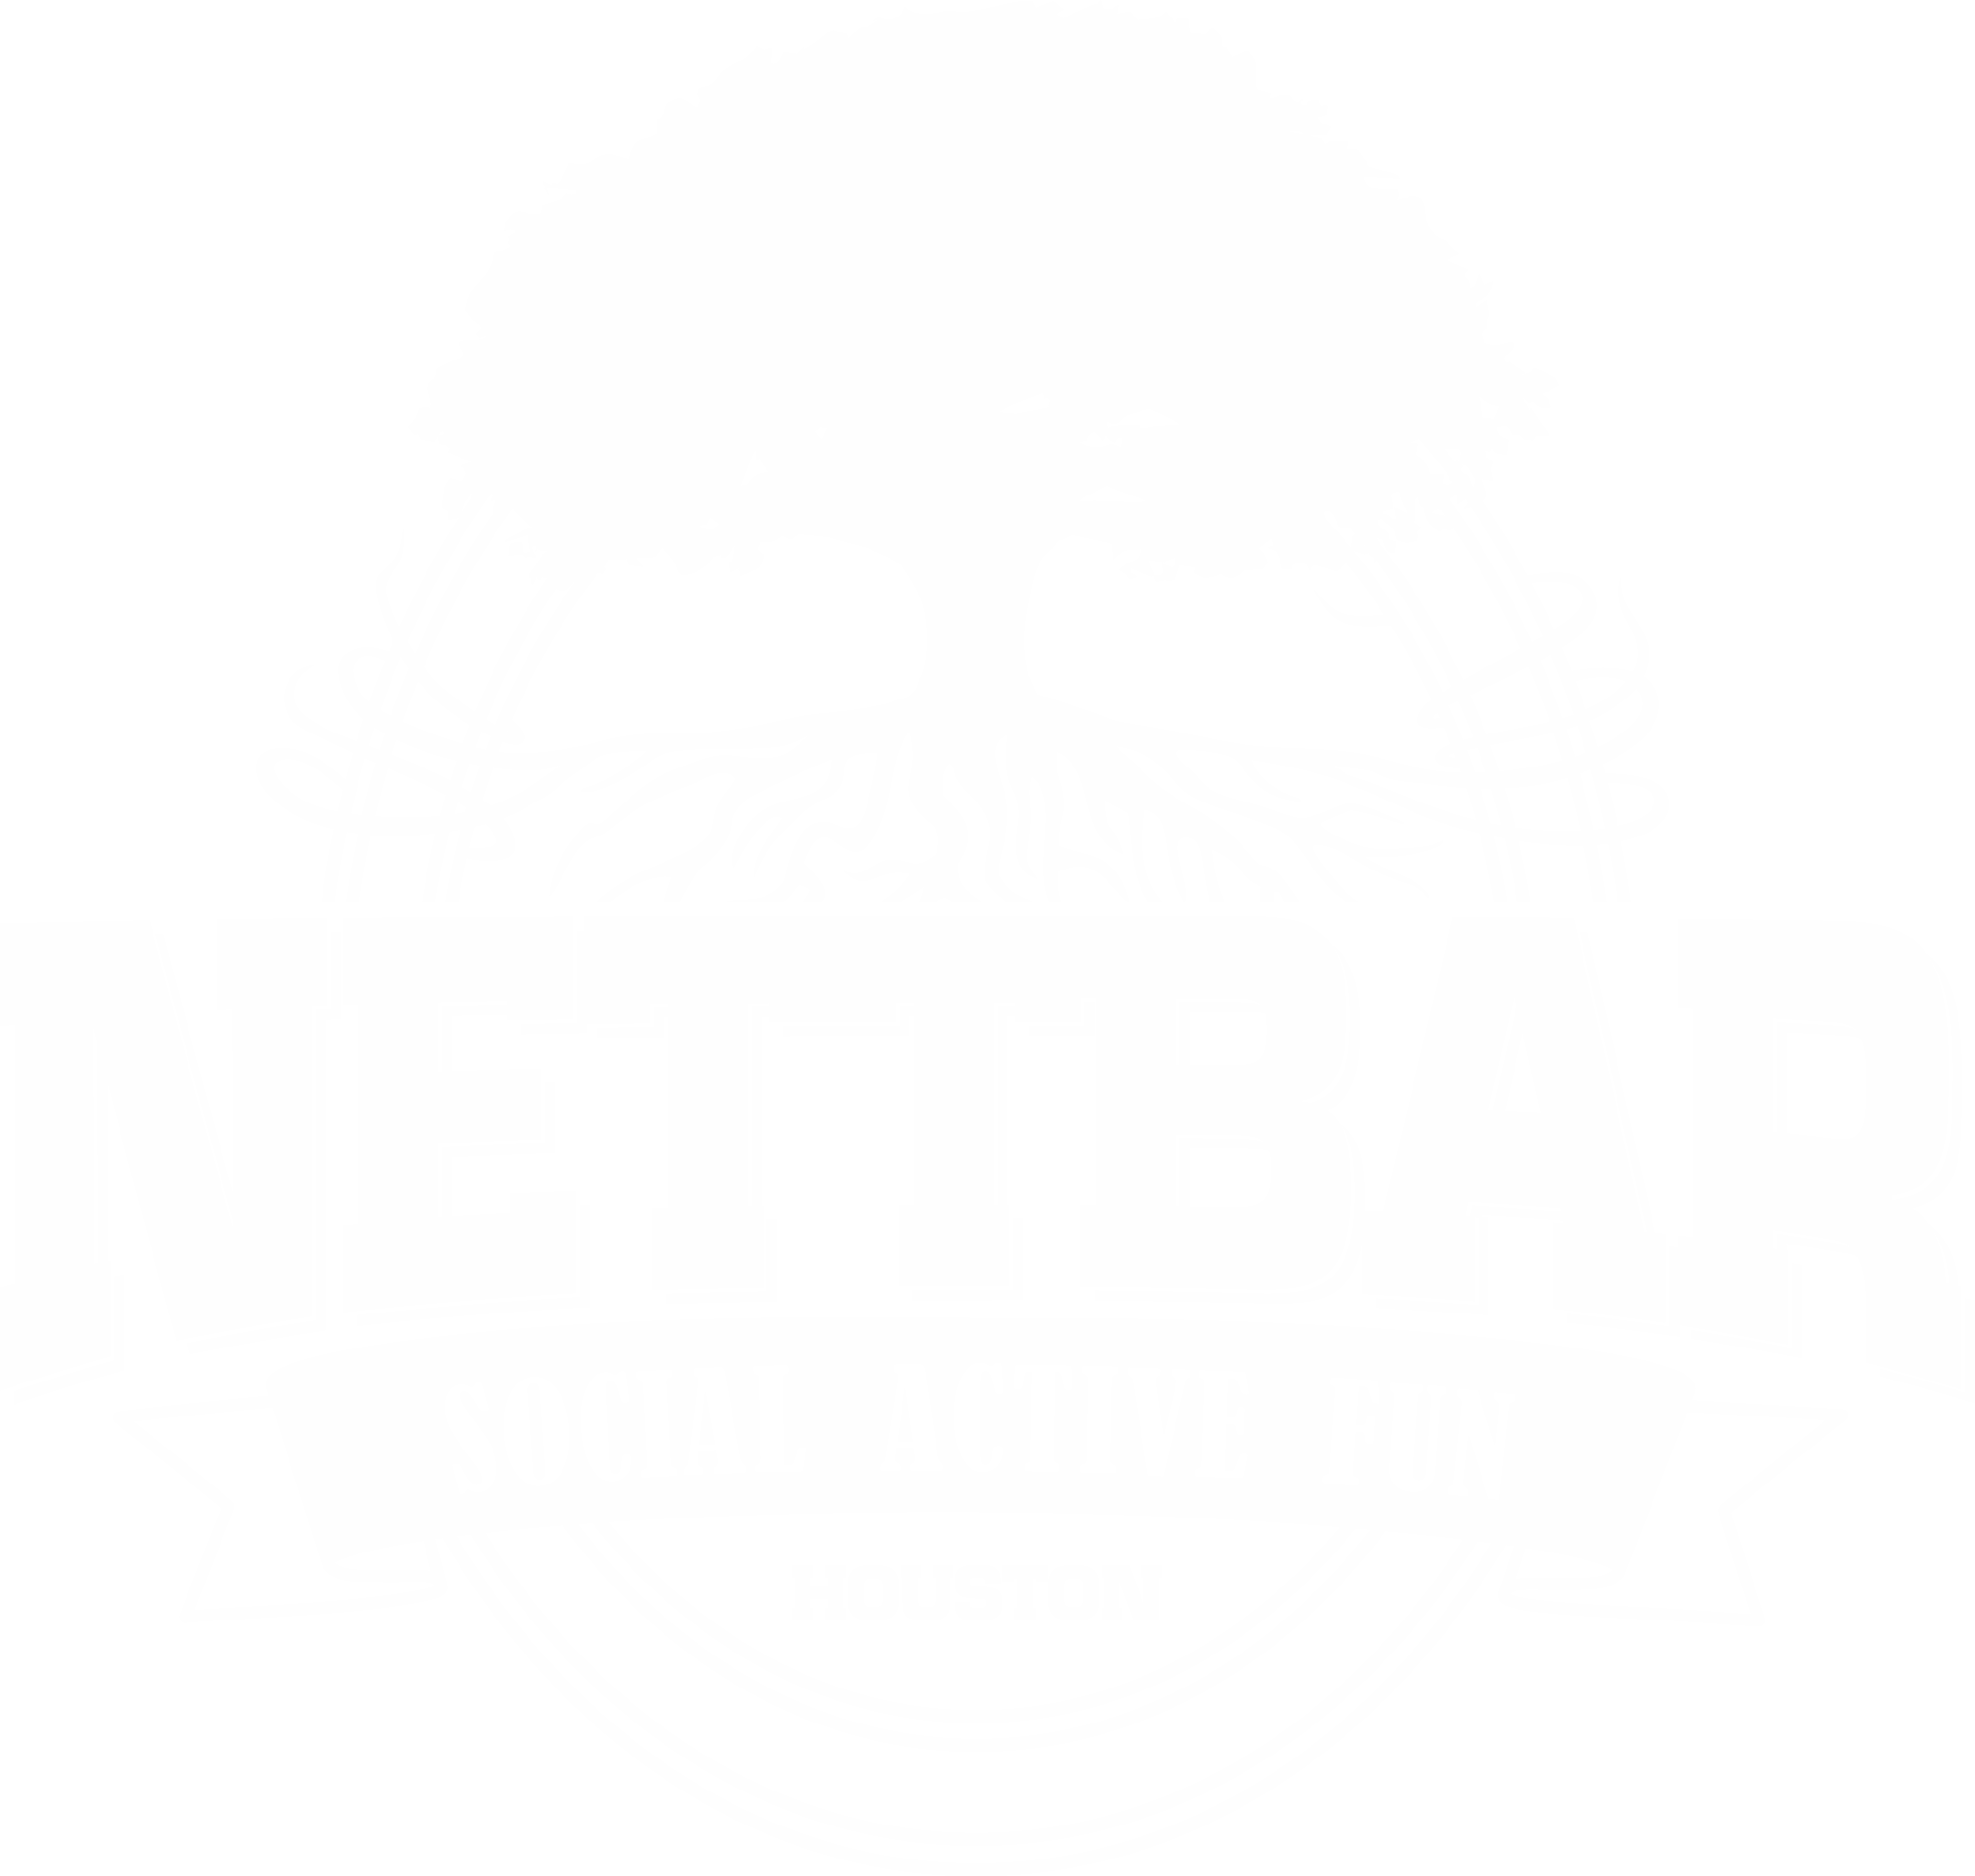 Nettbar Houston